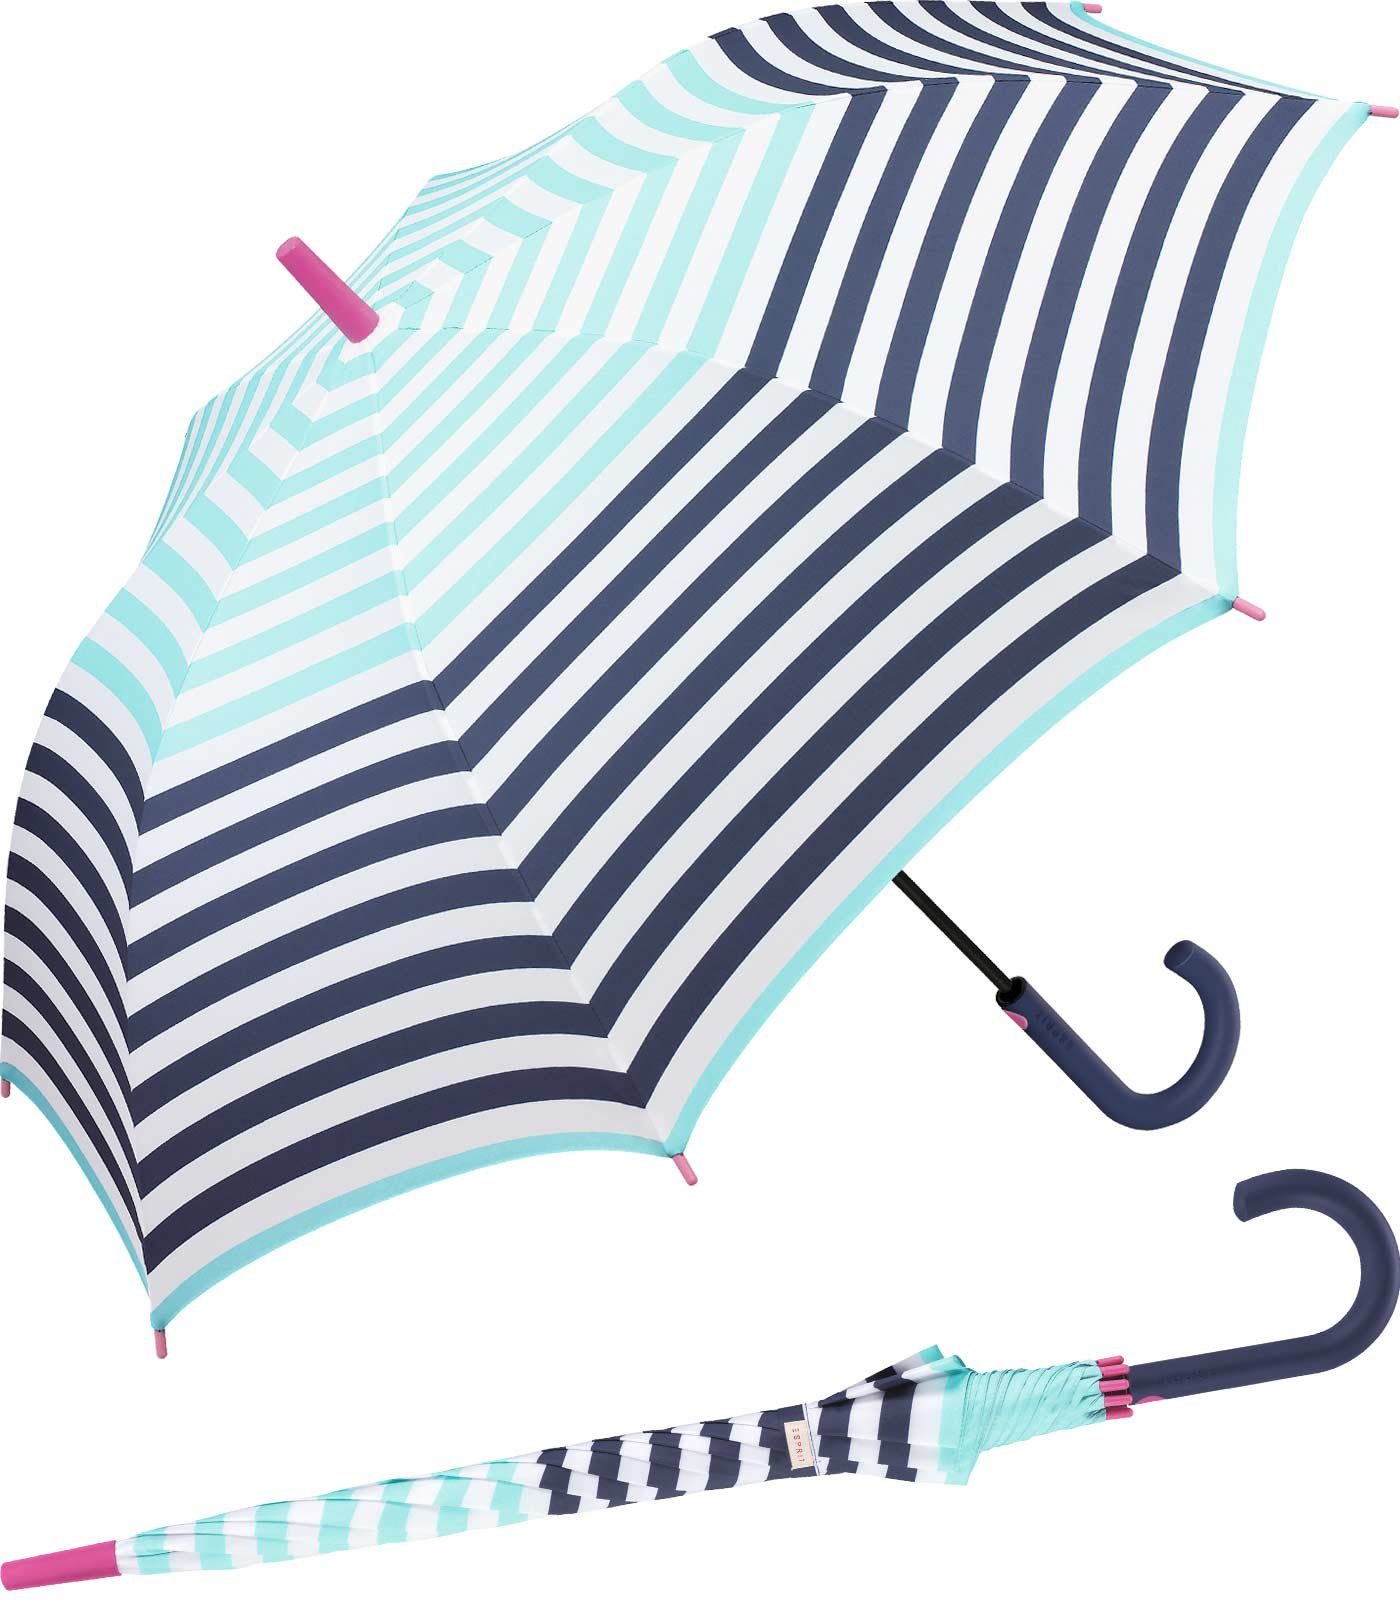 Esprit Langregenschirm großer Regenschirm für Damen mit Auf-Automatik, mit jugendlichem Streifenmuster - hellblau-navy | Stockschirme